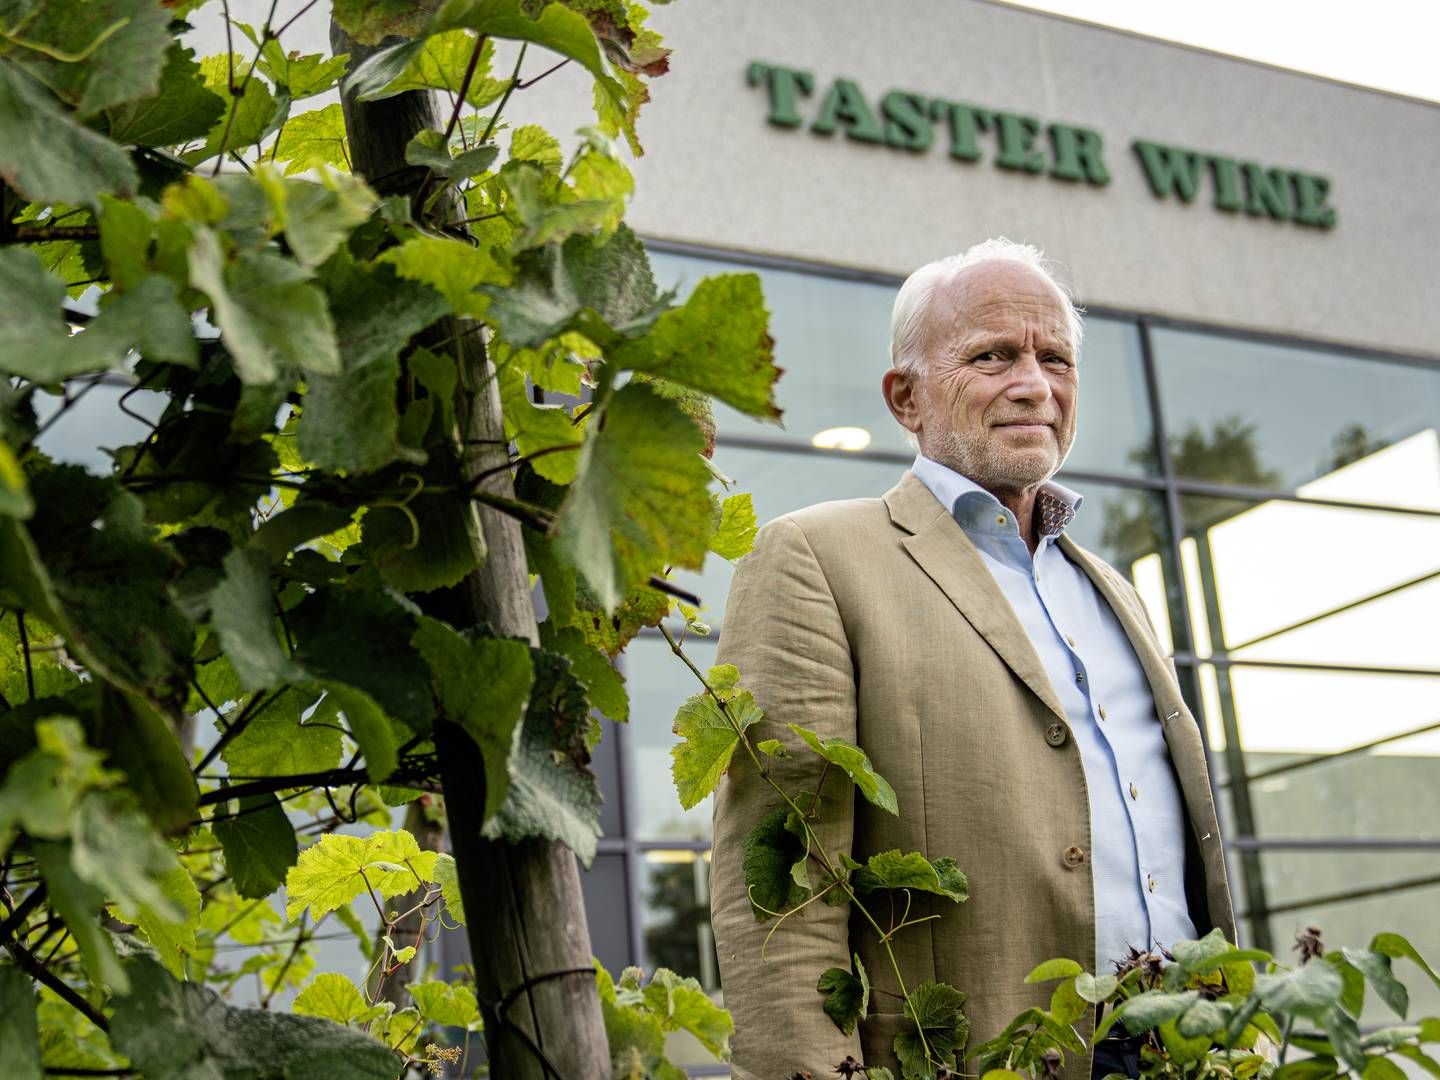 Ole Paustian har i en årrække, sammen med sin bror, drevet Taster Wine. | Foto: Stine Bidstrup/ERH